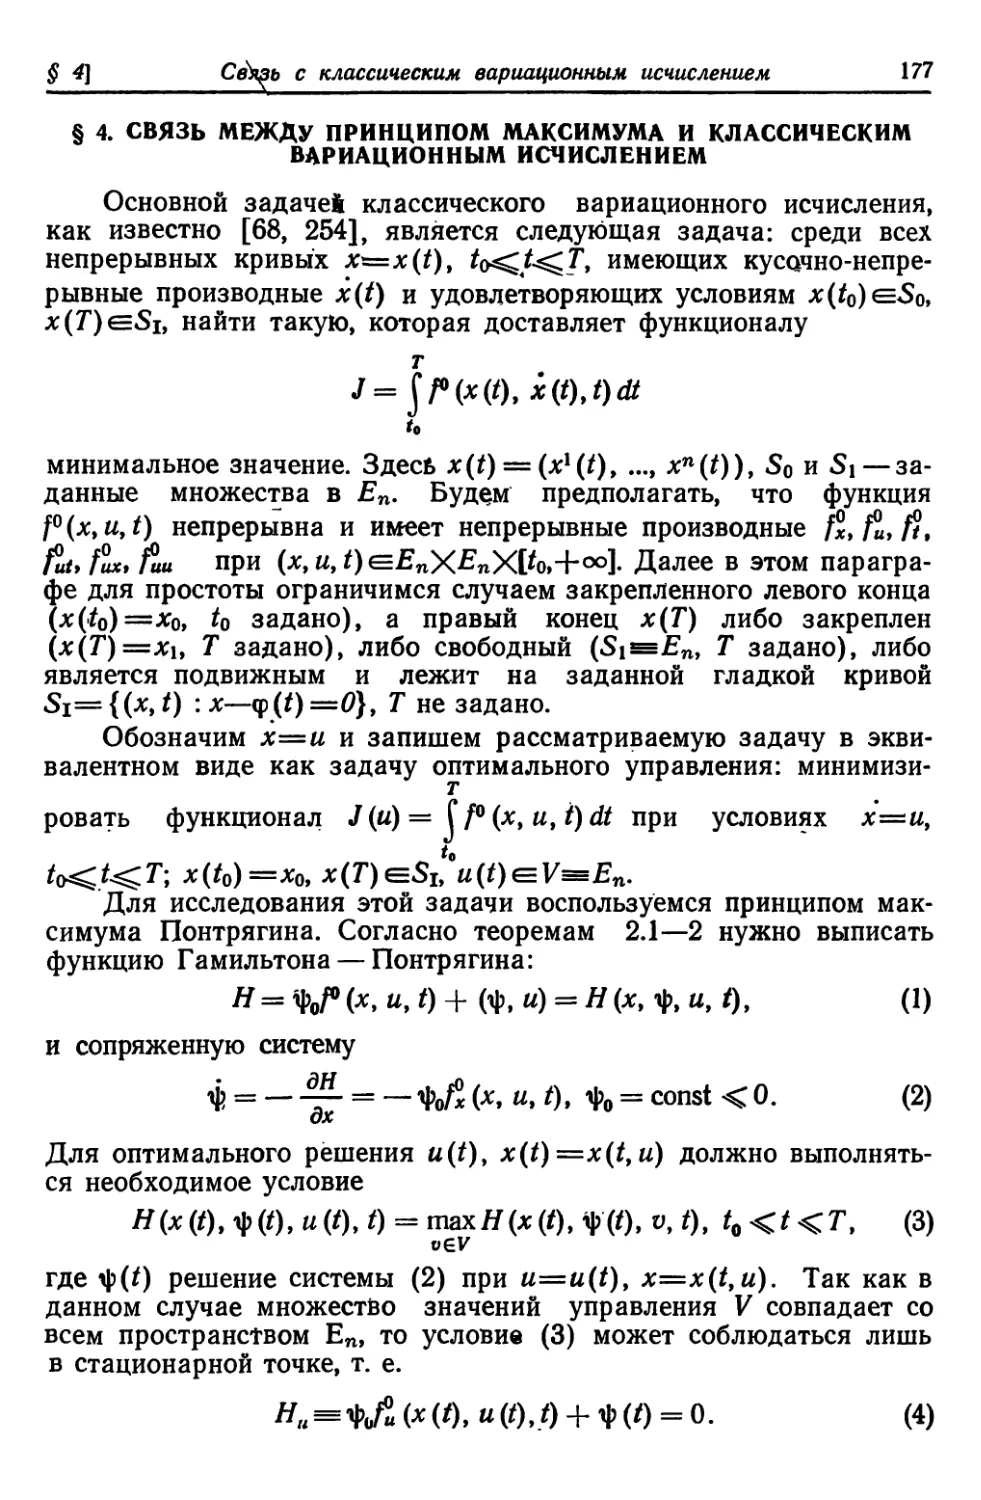 § 4. Связь между принципом максимума и классическим вариационным исчислением